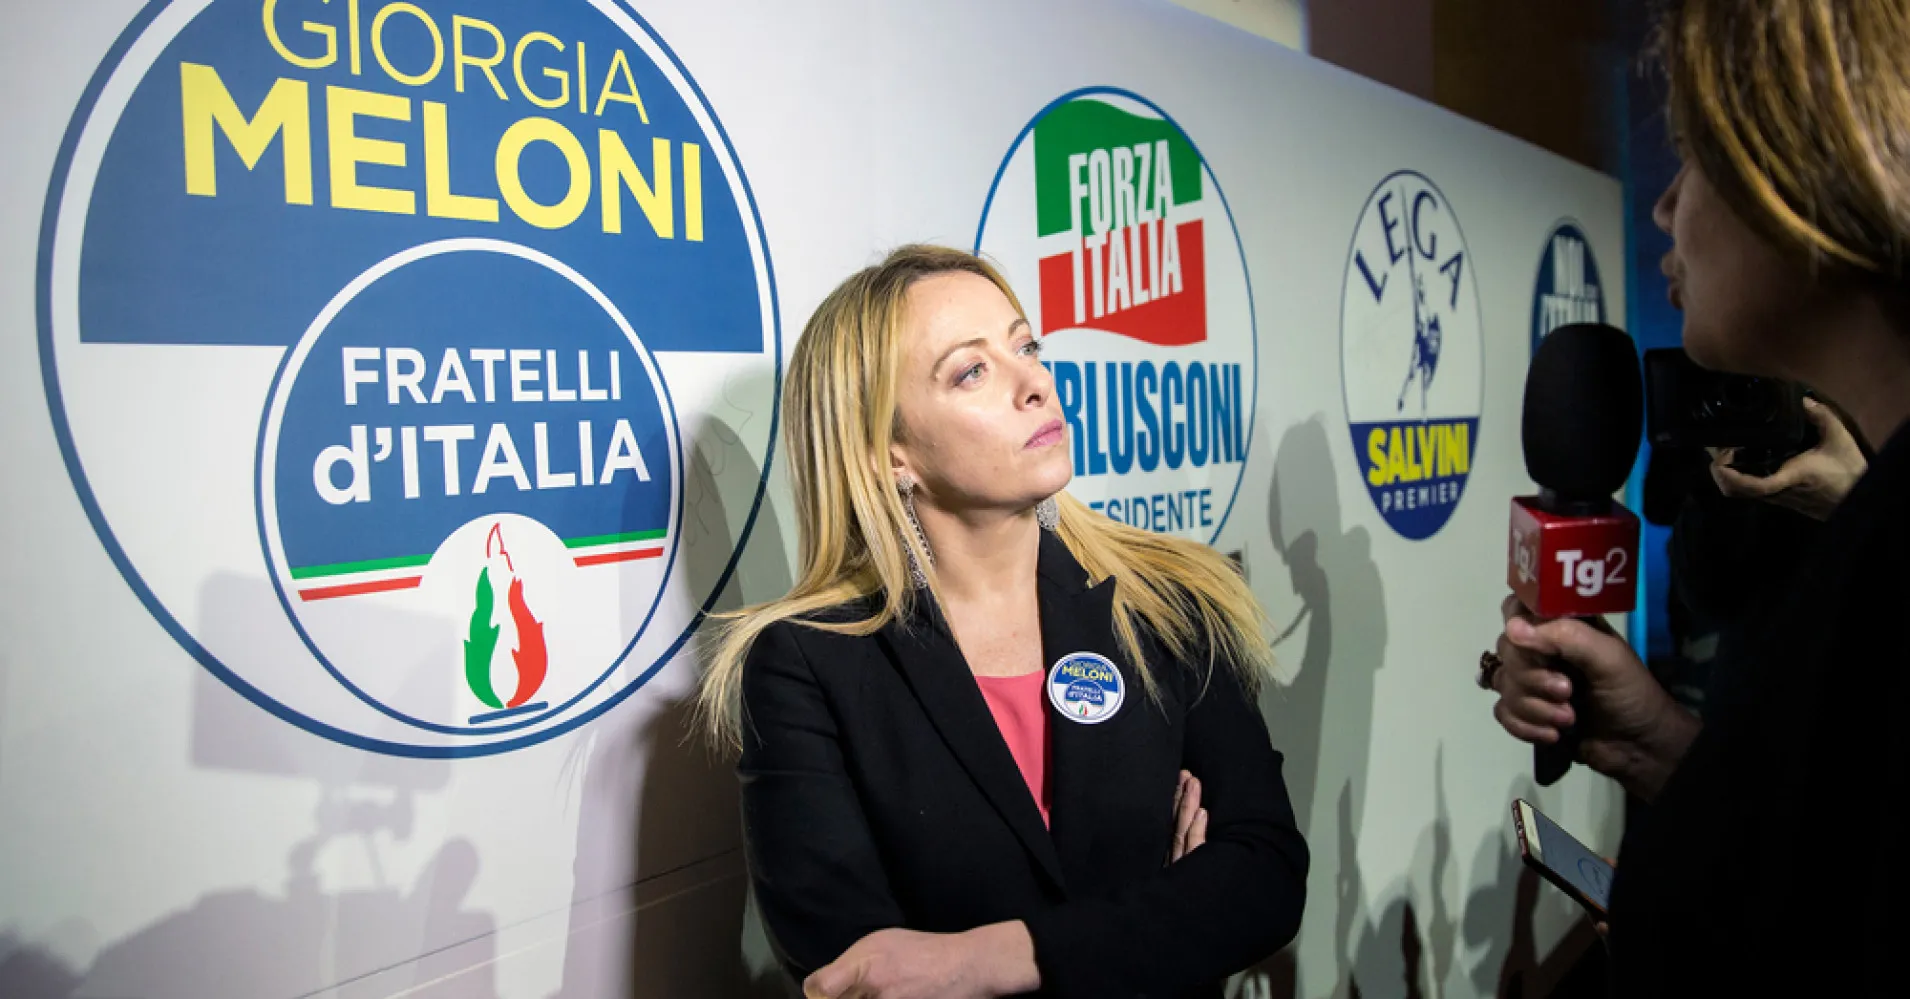 “Nessun disastro, nessuna fuga dall’eurozona”.  Meloni rifiuta i collegamenti con i fascisti italiani